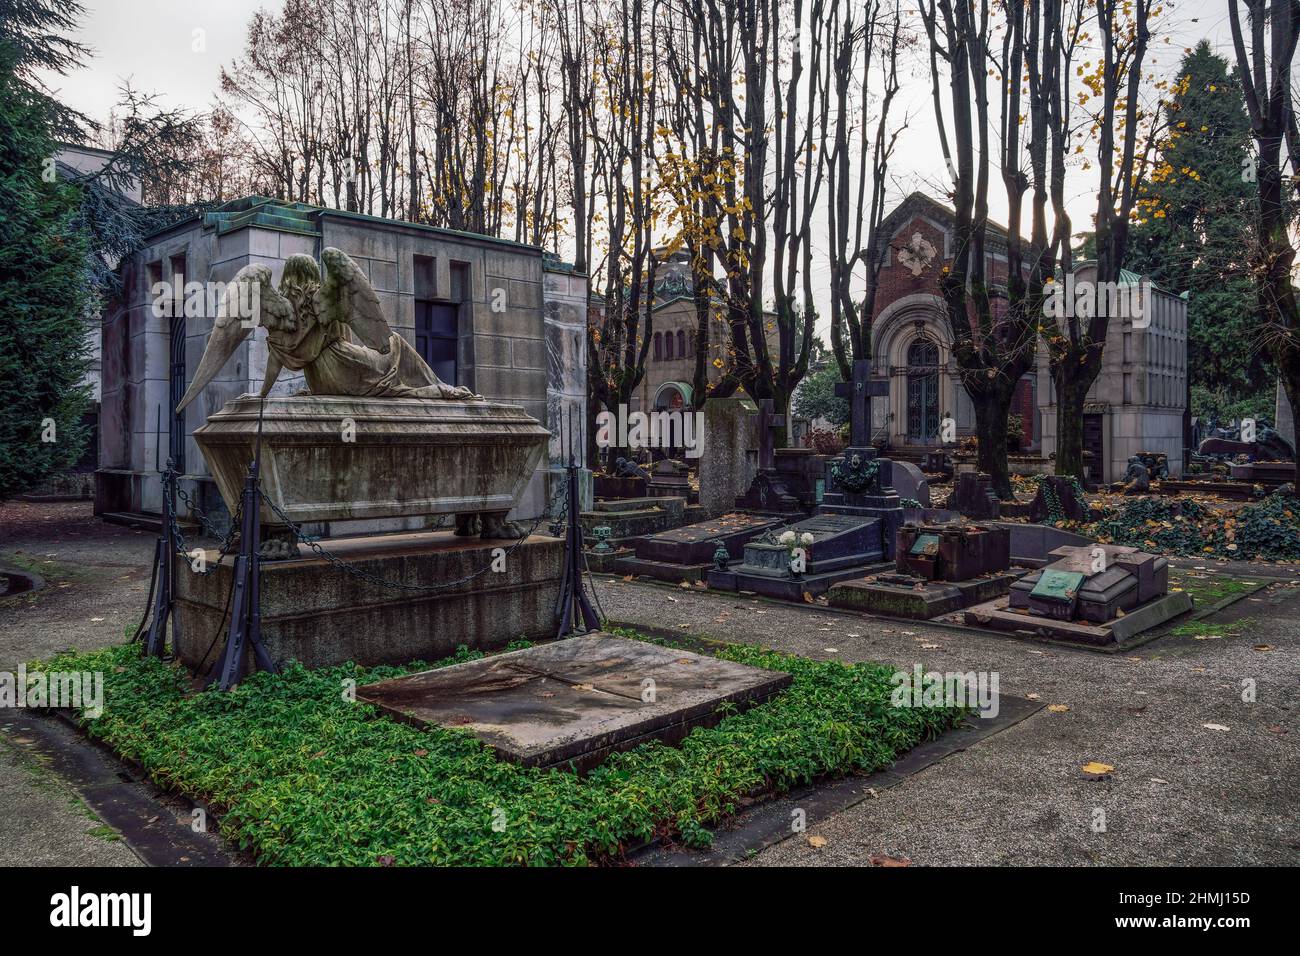 Milan, Italie Cimetière monumental avec tombes artistiques et monuments. Cimetière Monumentale cimetière avec sculptures funéraires et temples. Banque D'Images